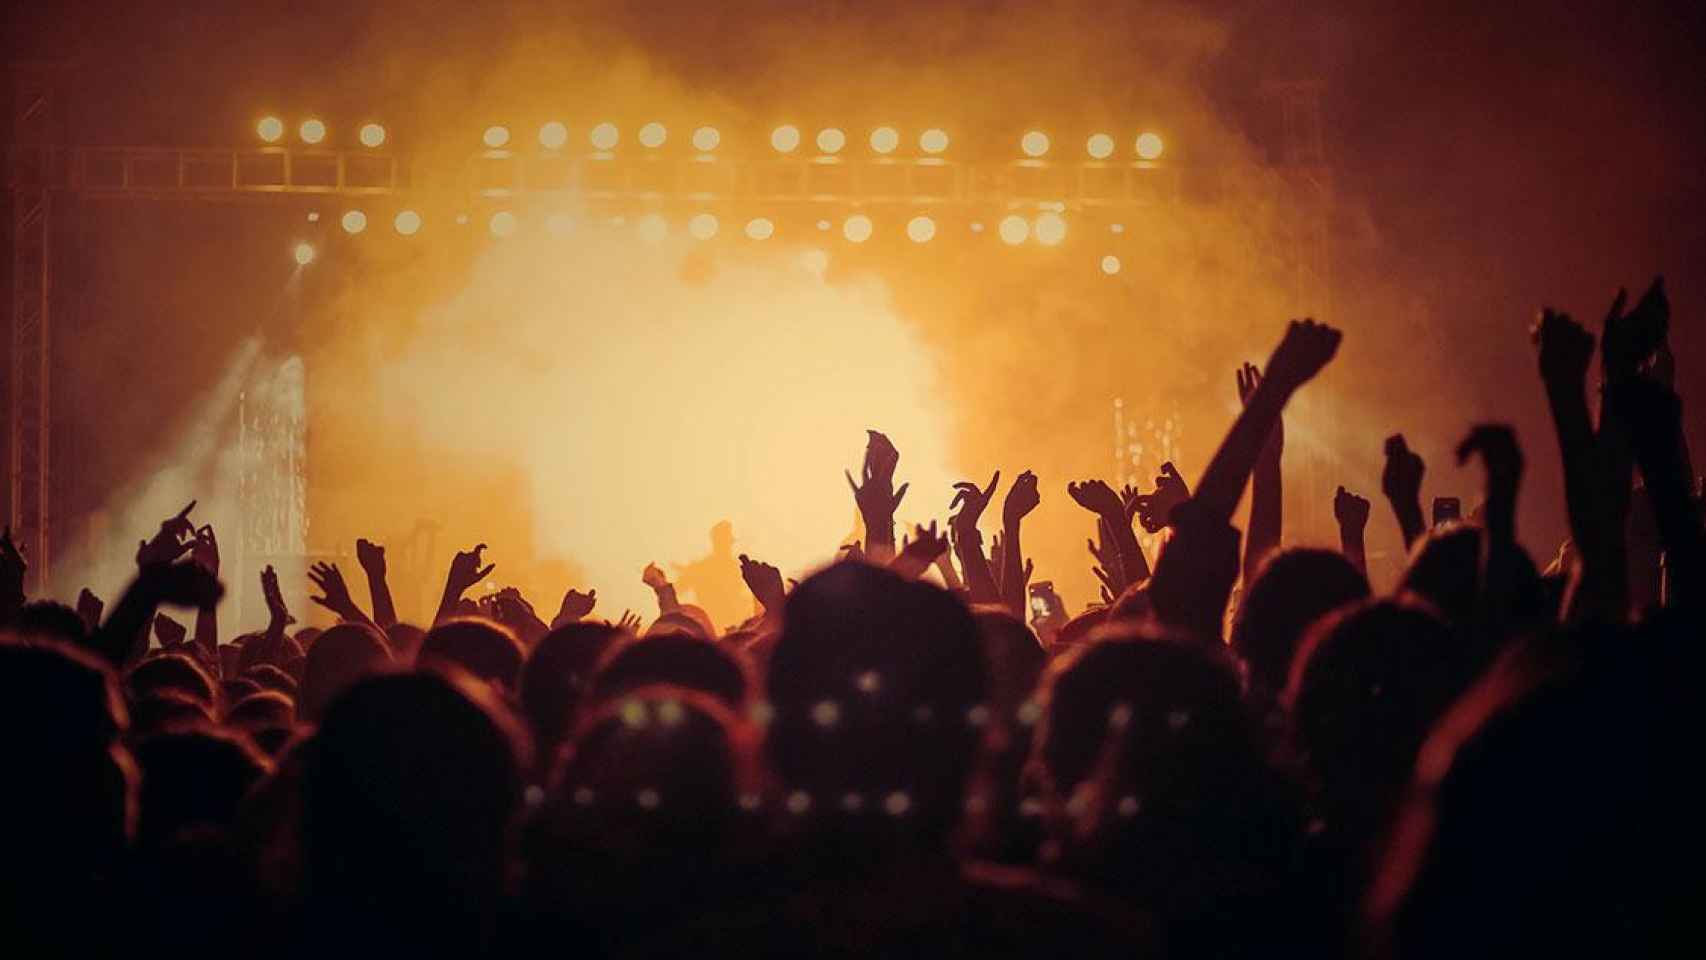 Personas disfrutando de los conciertos y festivales / UNSPLASH - VISNHU R NAIR